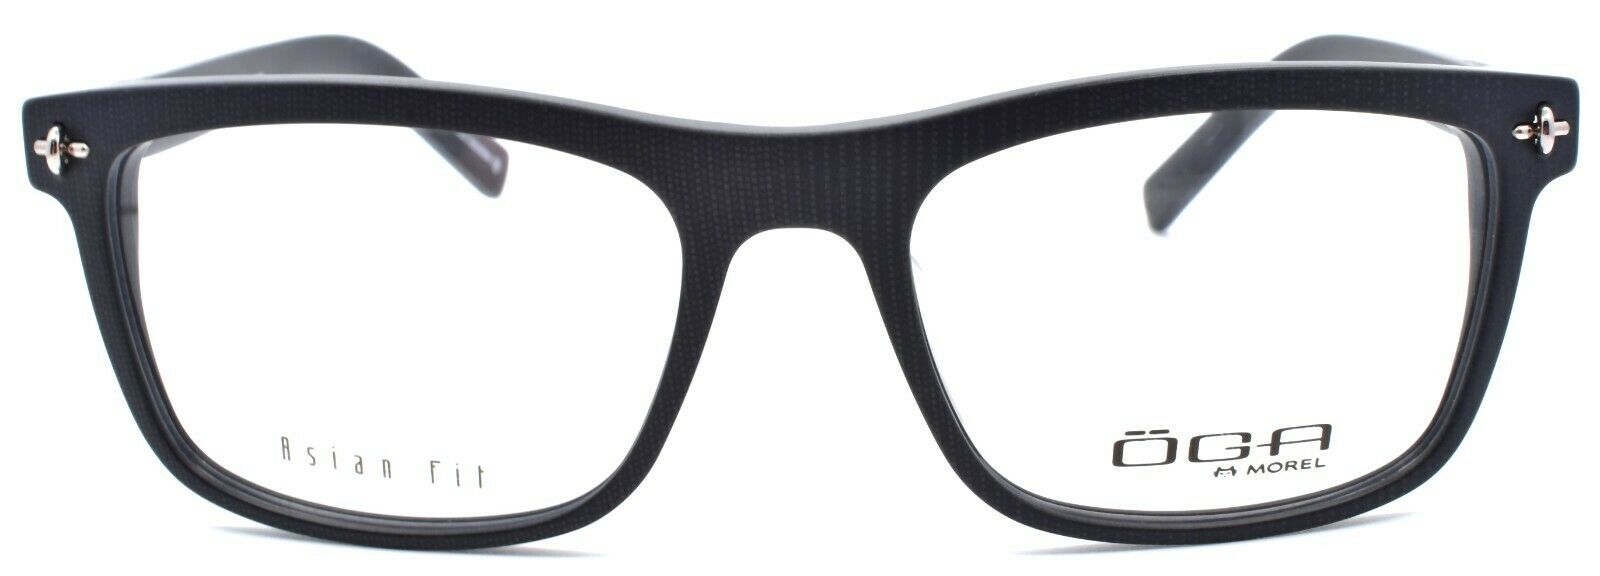 2-OGA by Morel 2953S NG021 Men's Eyeglasses Frames Asian Fit 54-18-125 Dark Grey-3604770890235-IKSpecs